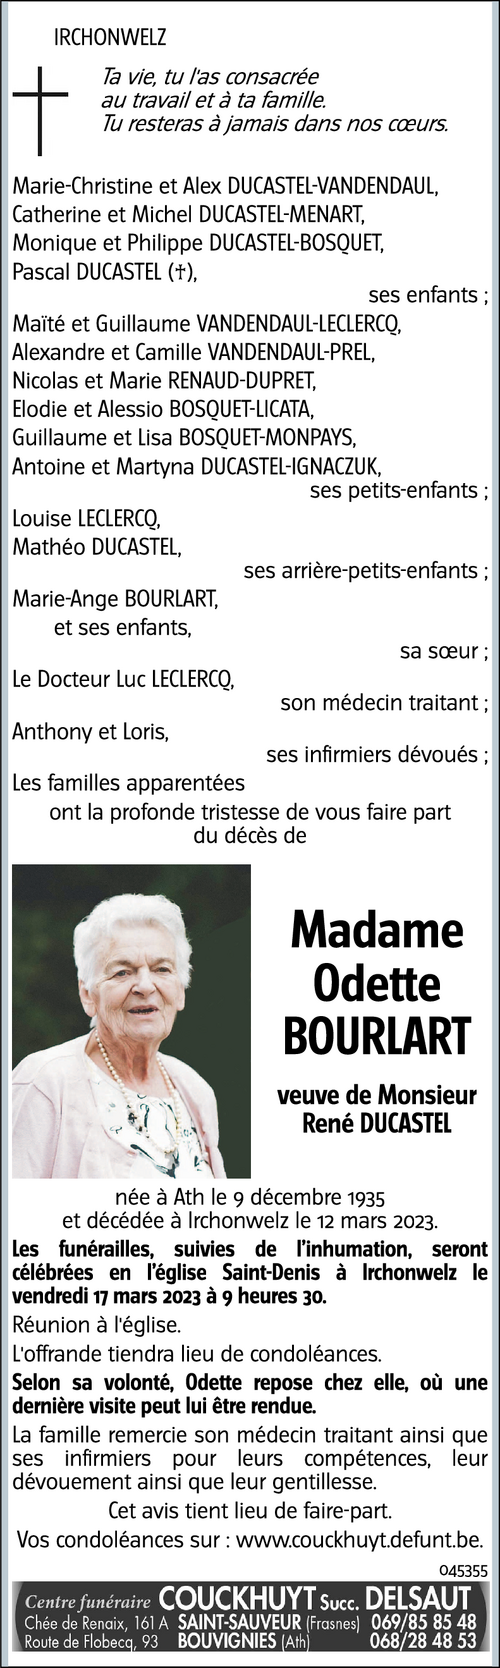 Odette Bourlart